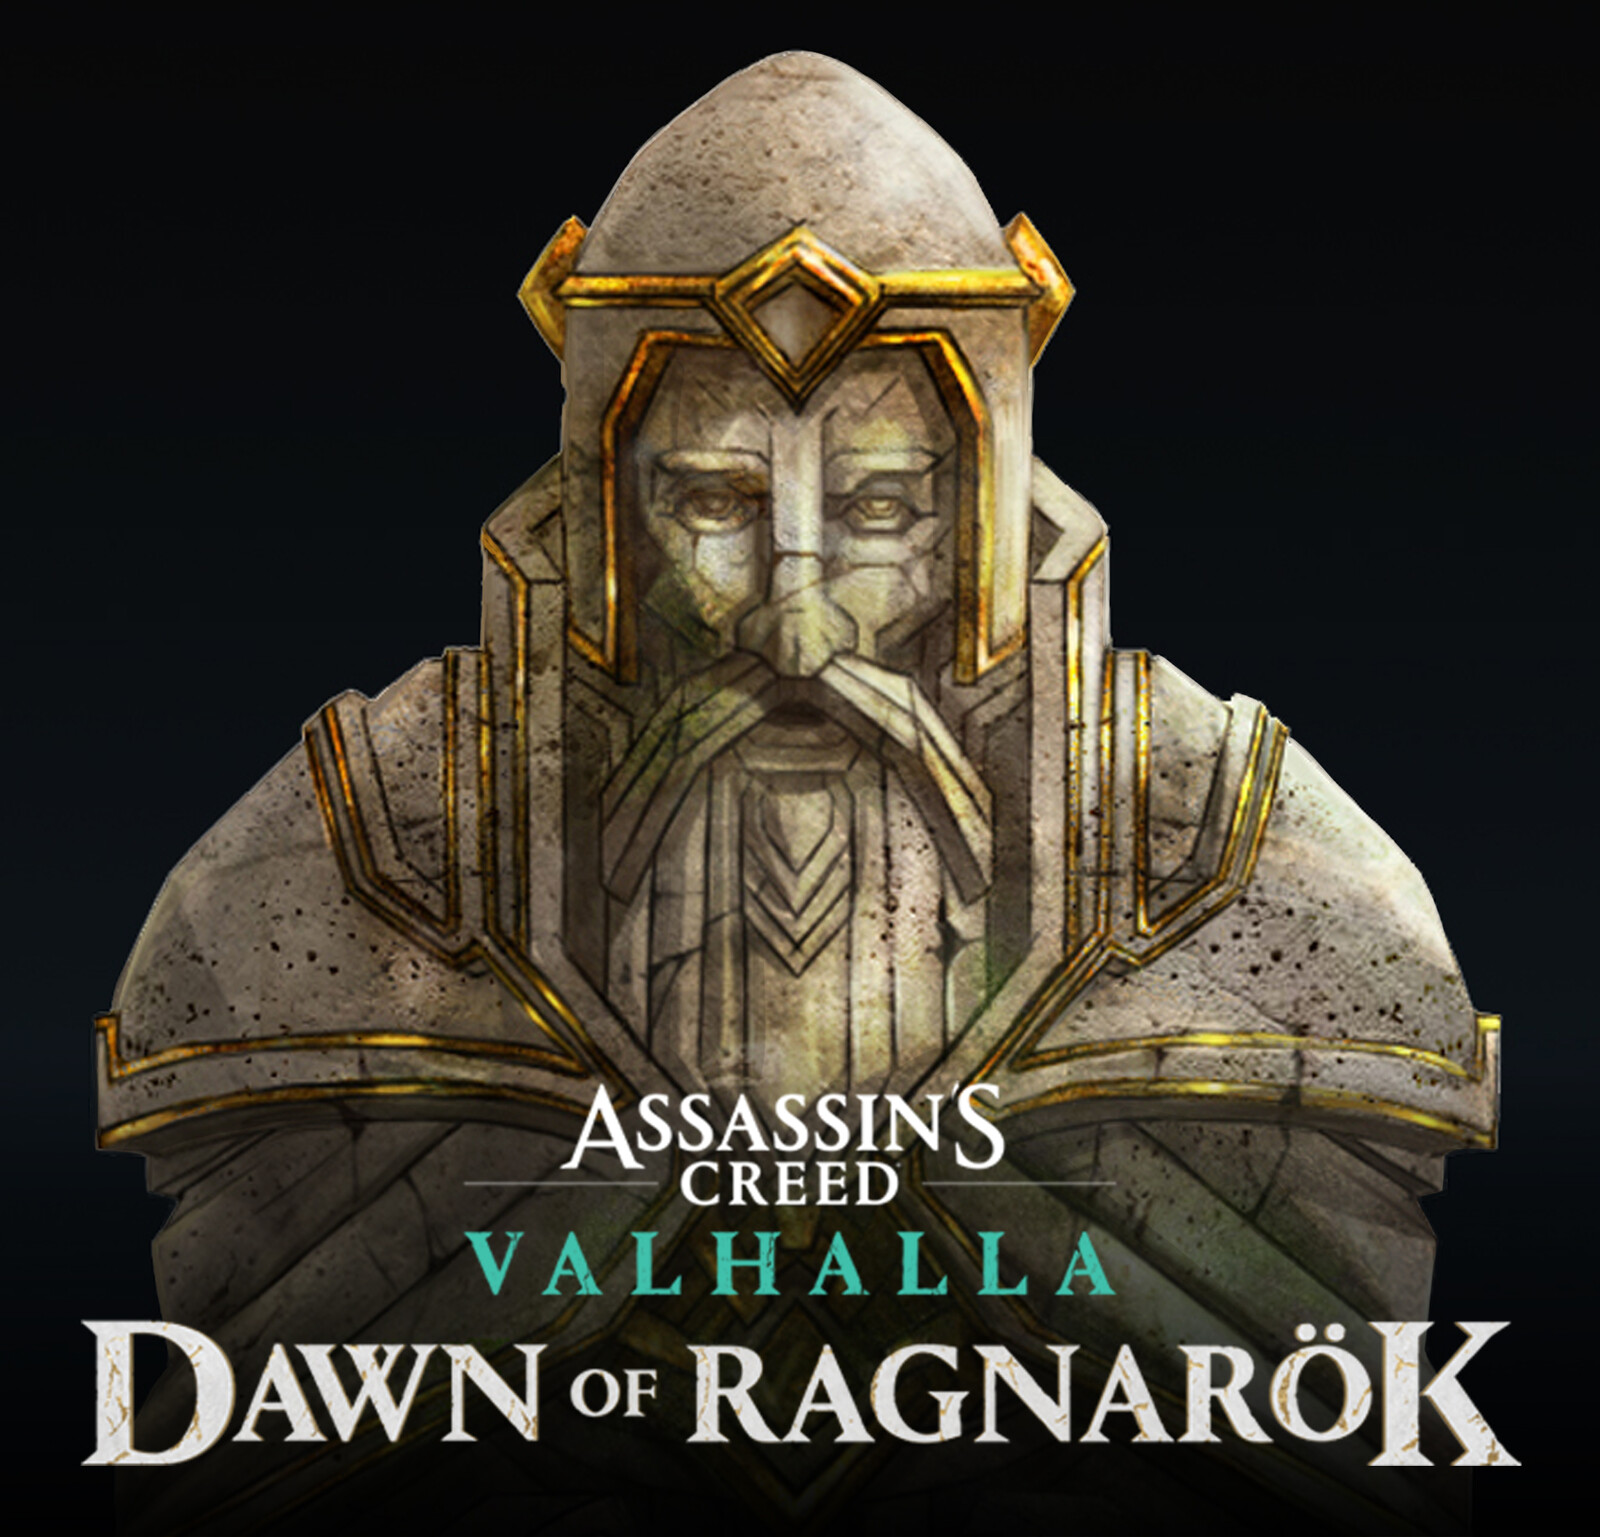 Assassin's Creed Valhalla: Dawn of Ragnarök / The Statues of Svartalfheim